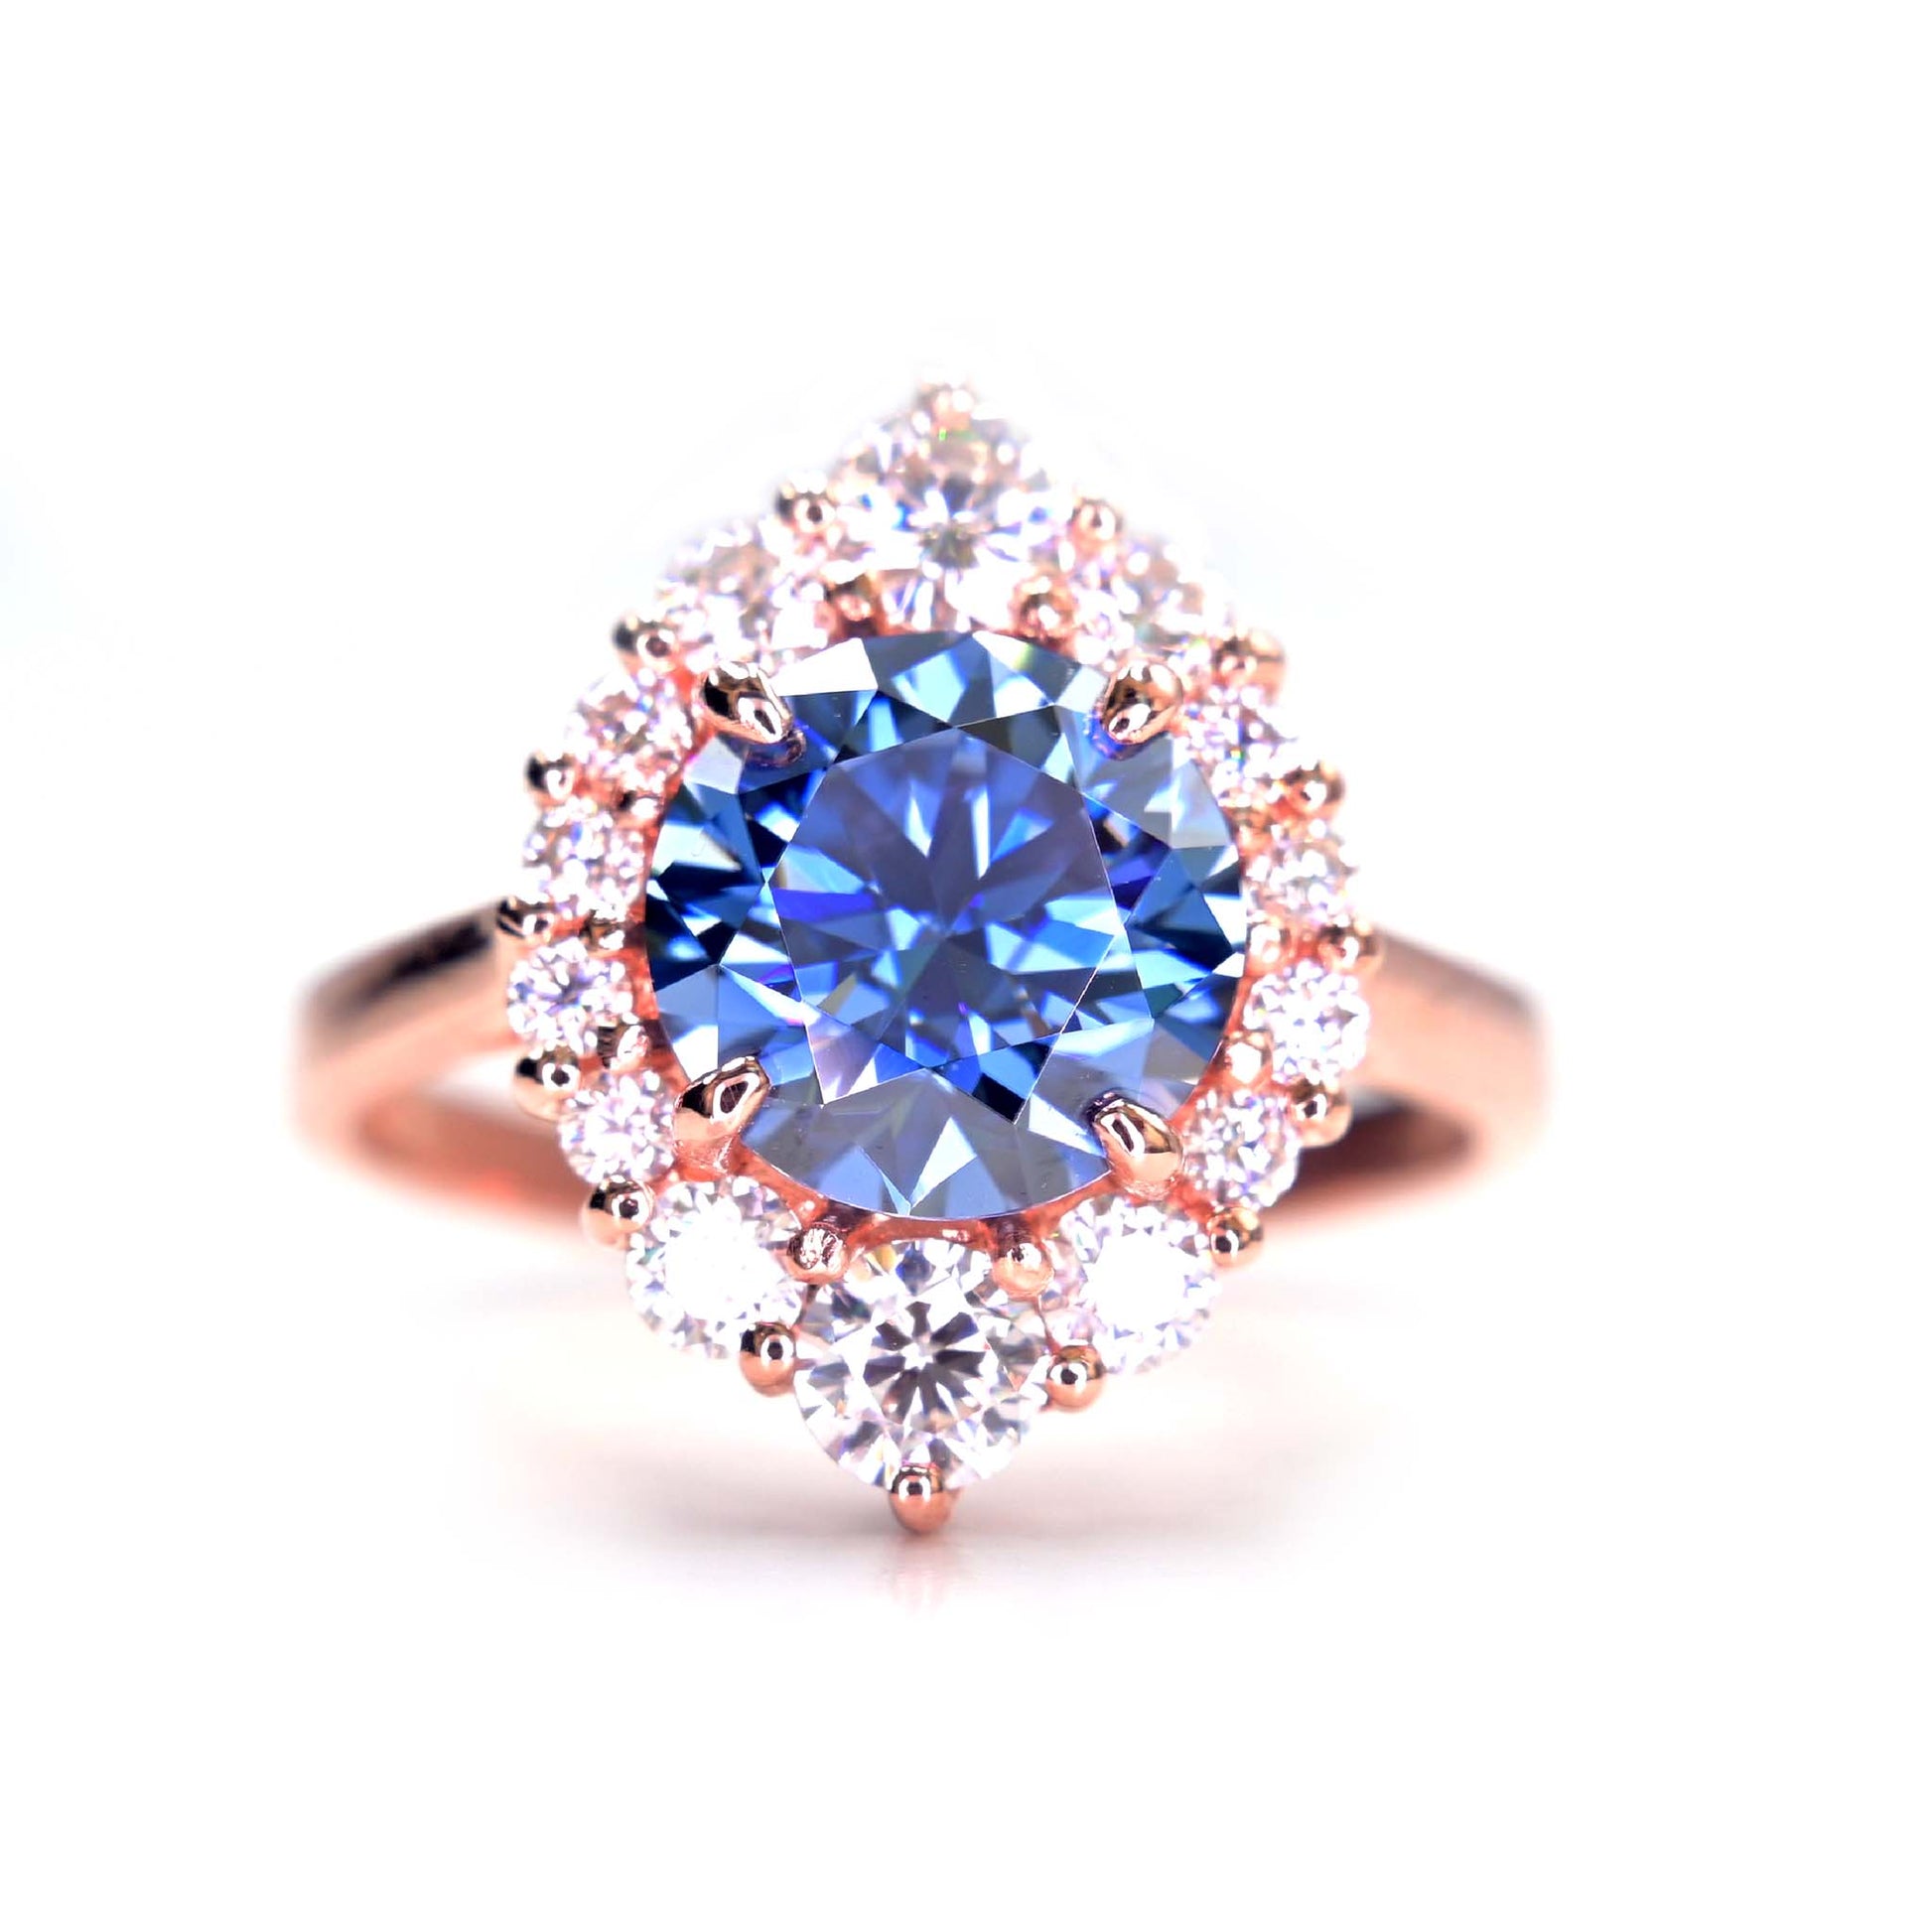 Stunning blue moissanite ring in rose gold